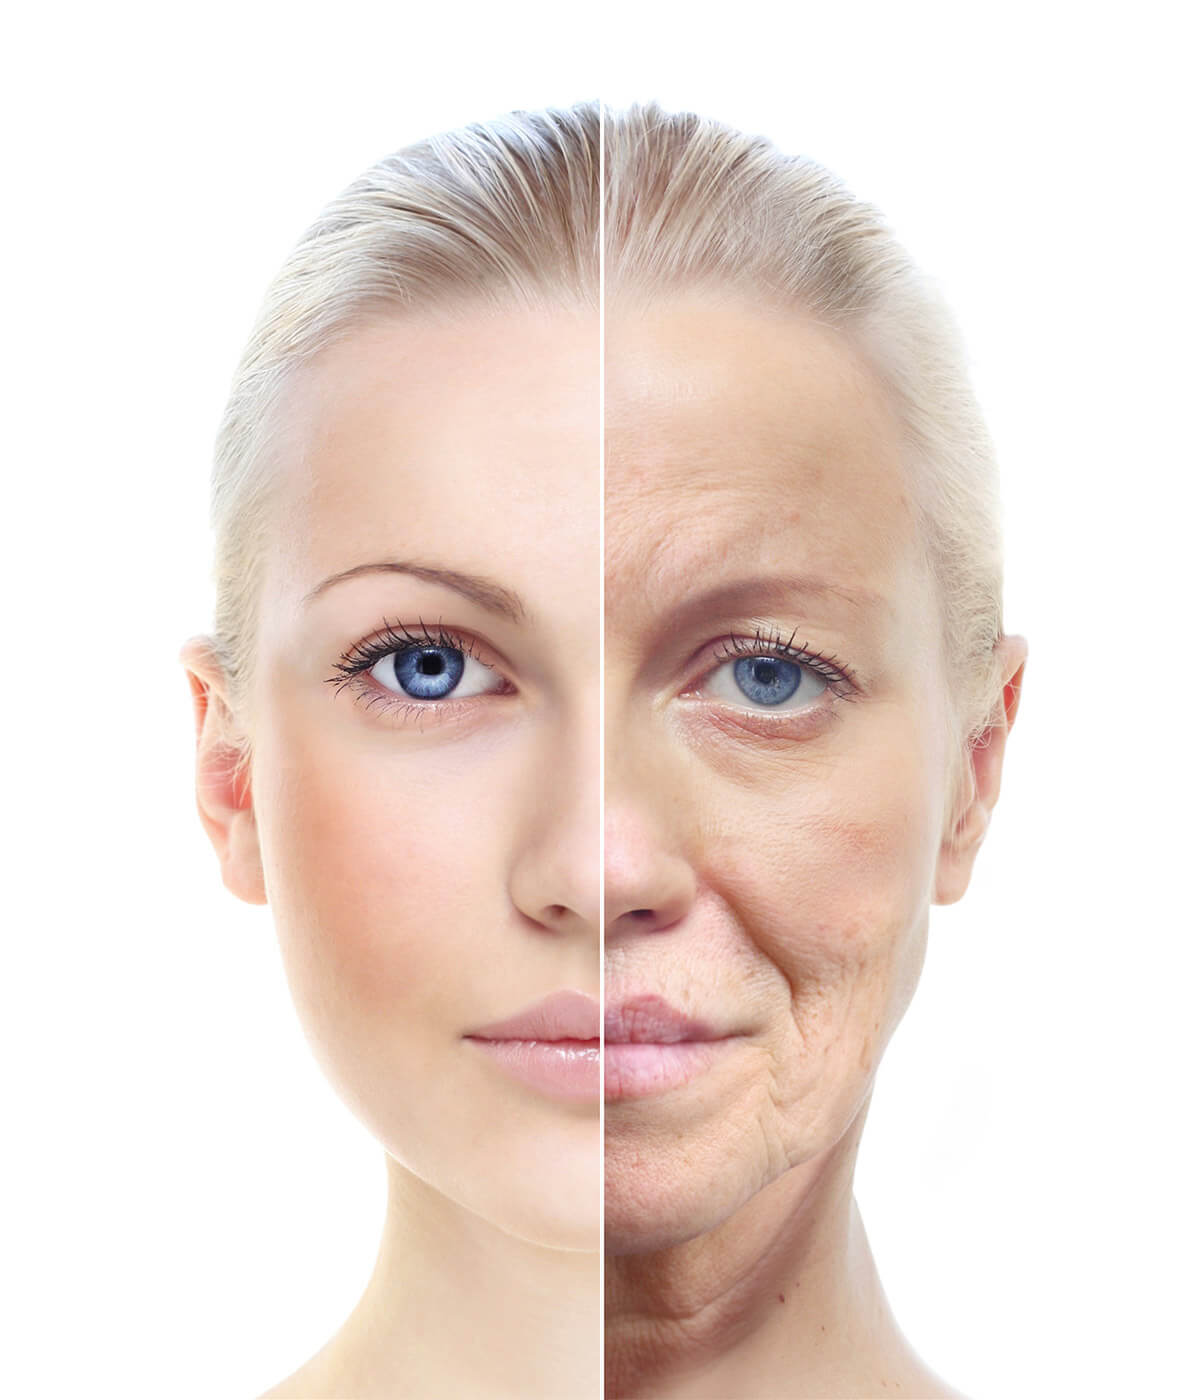 Endring fra ung til gammel hud, aldring